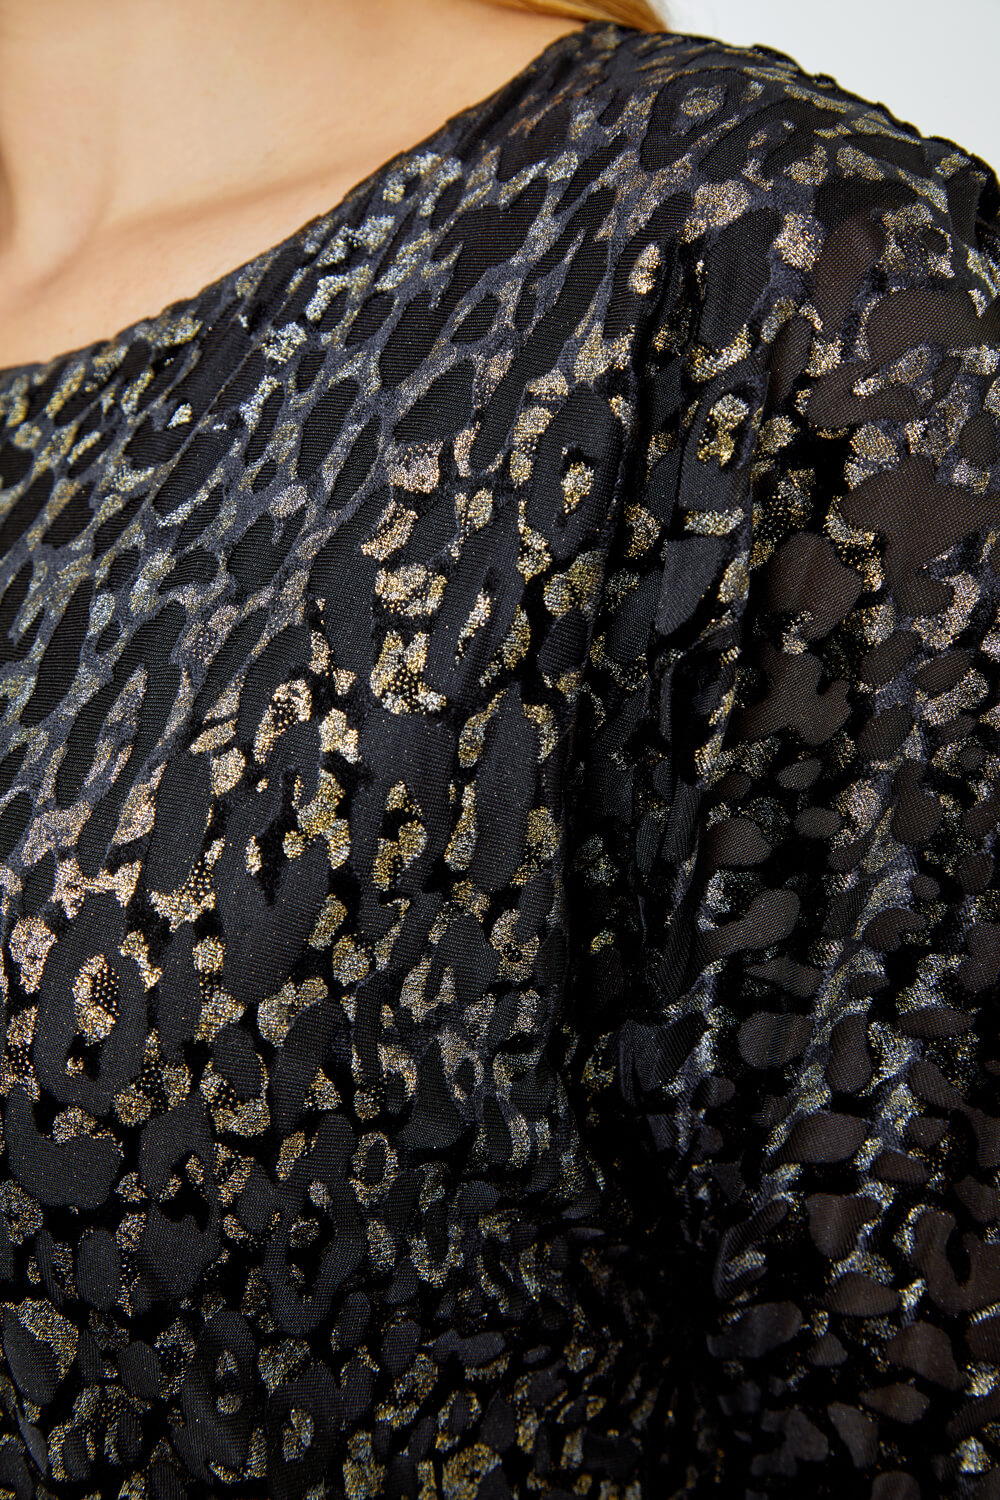 Black Shimmer Leopard Print Velvet Dress, Image 5 of 5